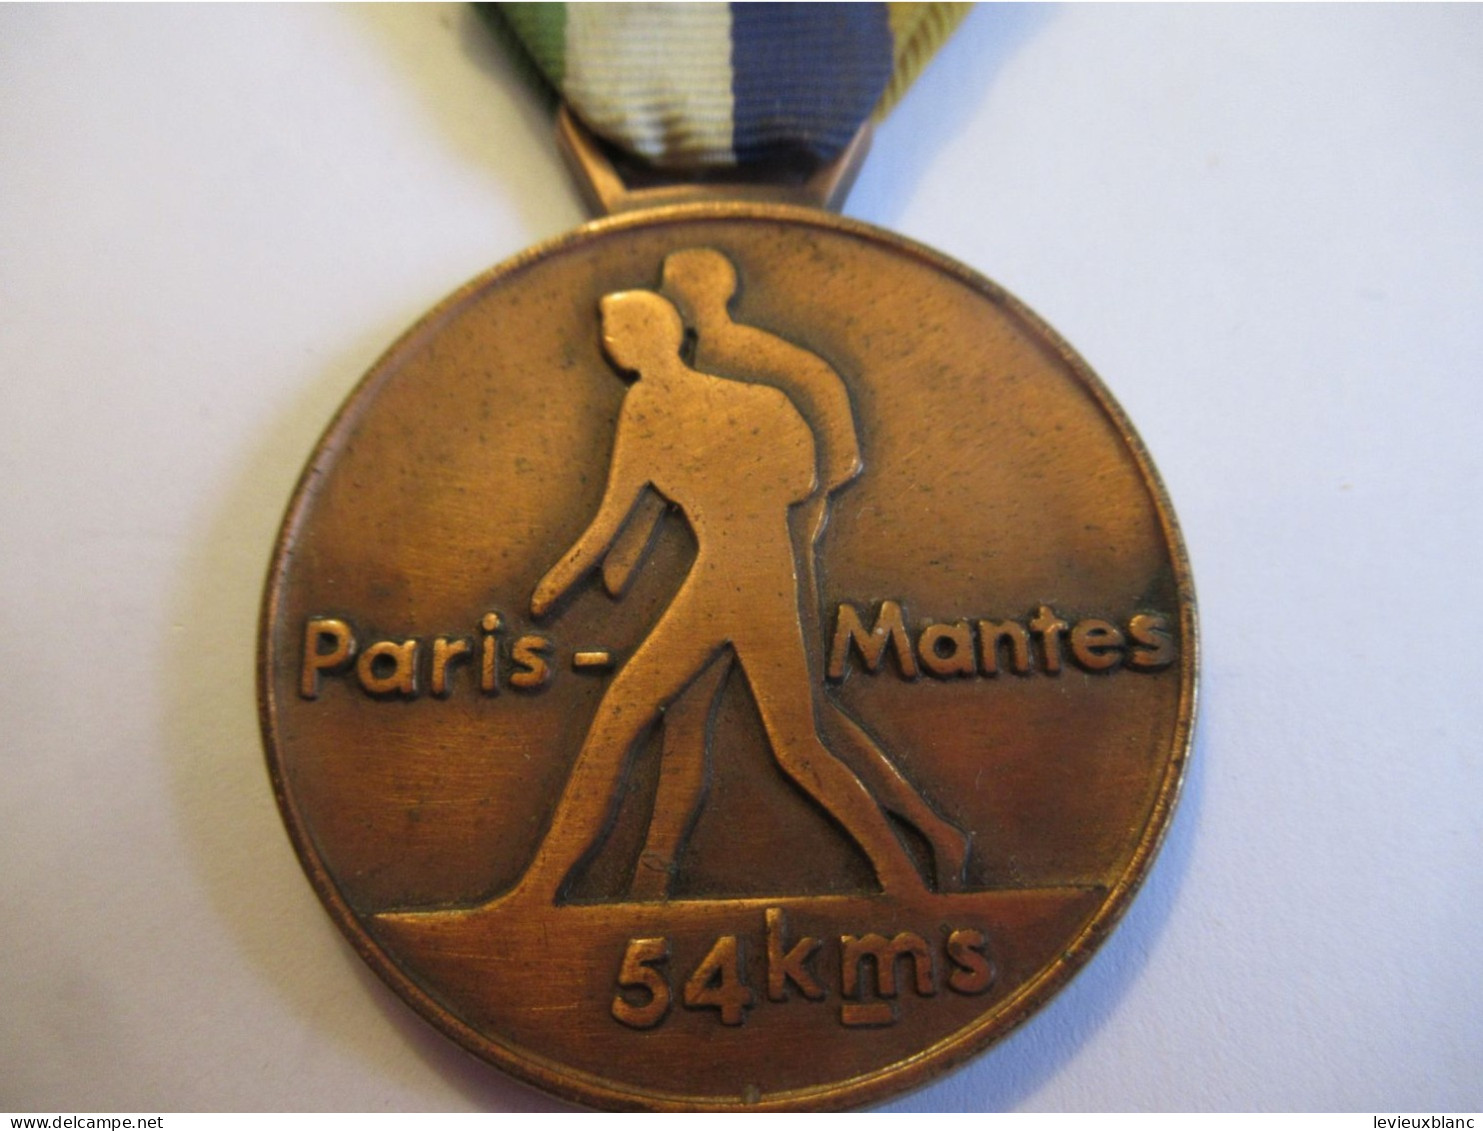 MARCHE / Paris - Mantes / 54 Km /  A S T - A S M / Cuivre / Cloisonné/ Vers  1960 -1970                SPO438 - Atletica